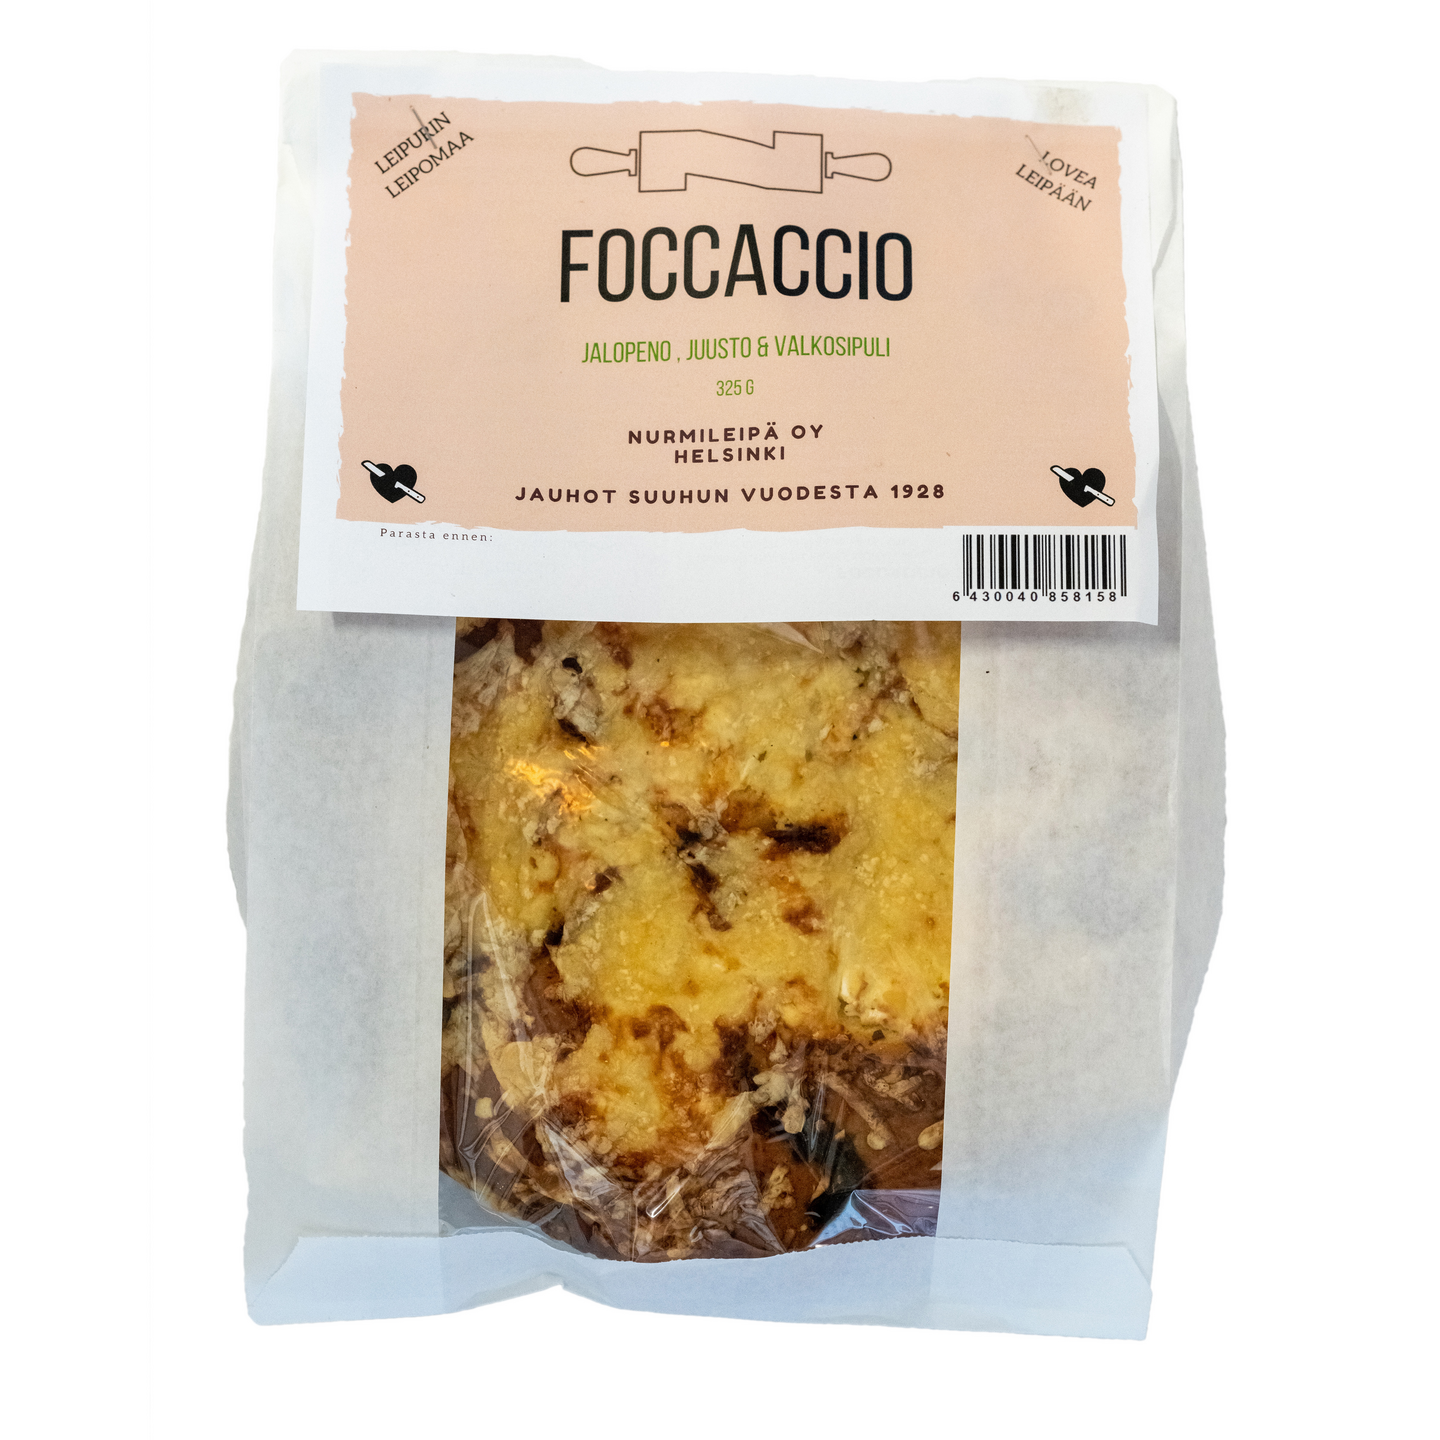 Nurmileipä Foccaccio jalapeno juusto valkosipuli